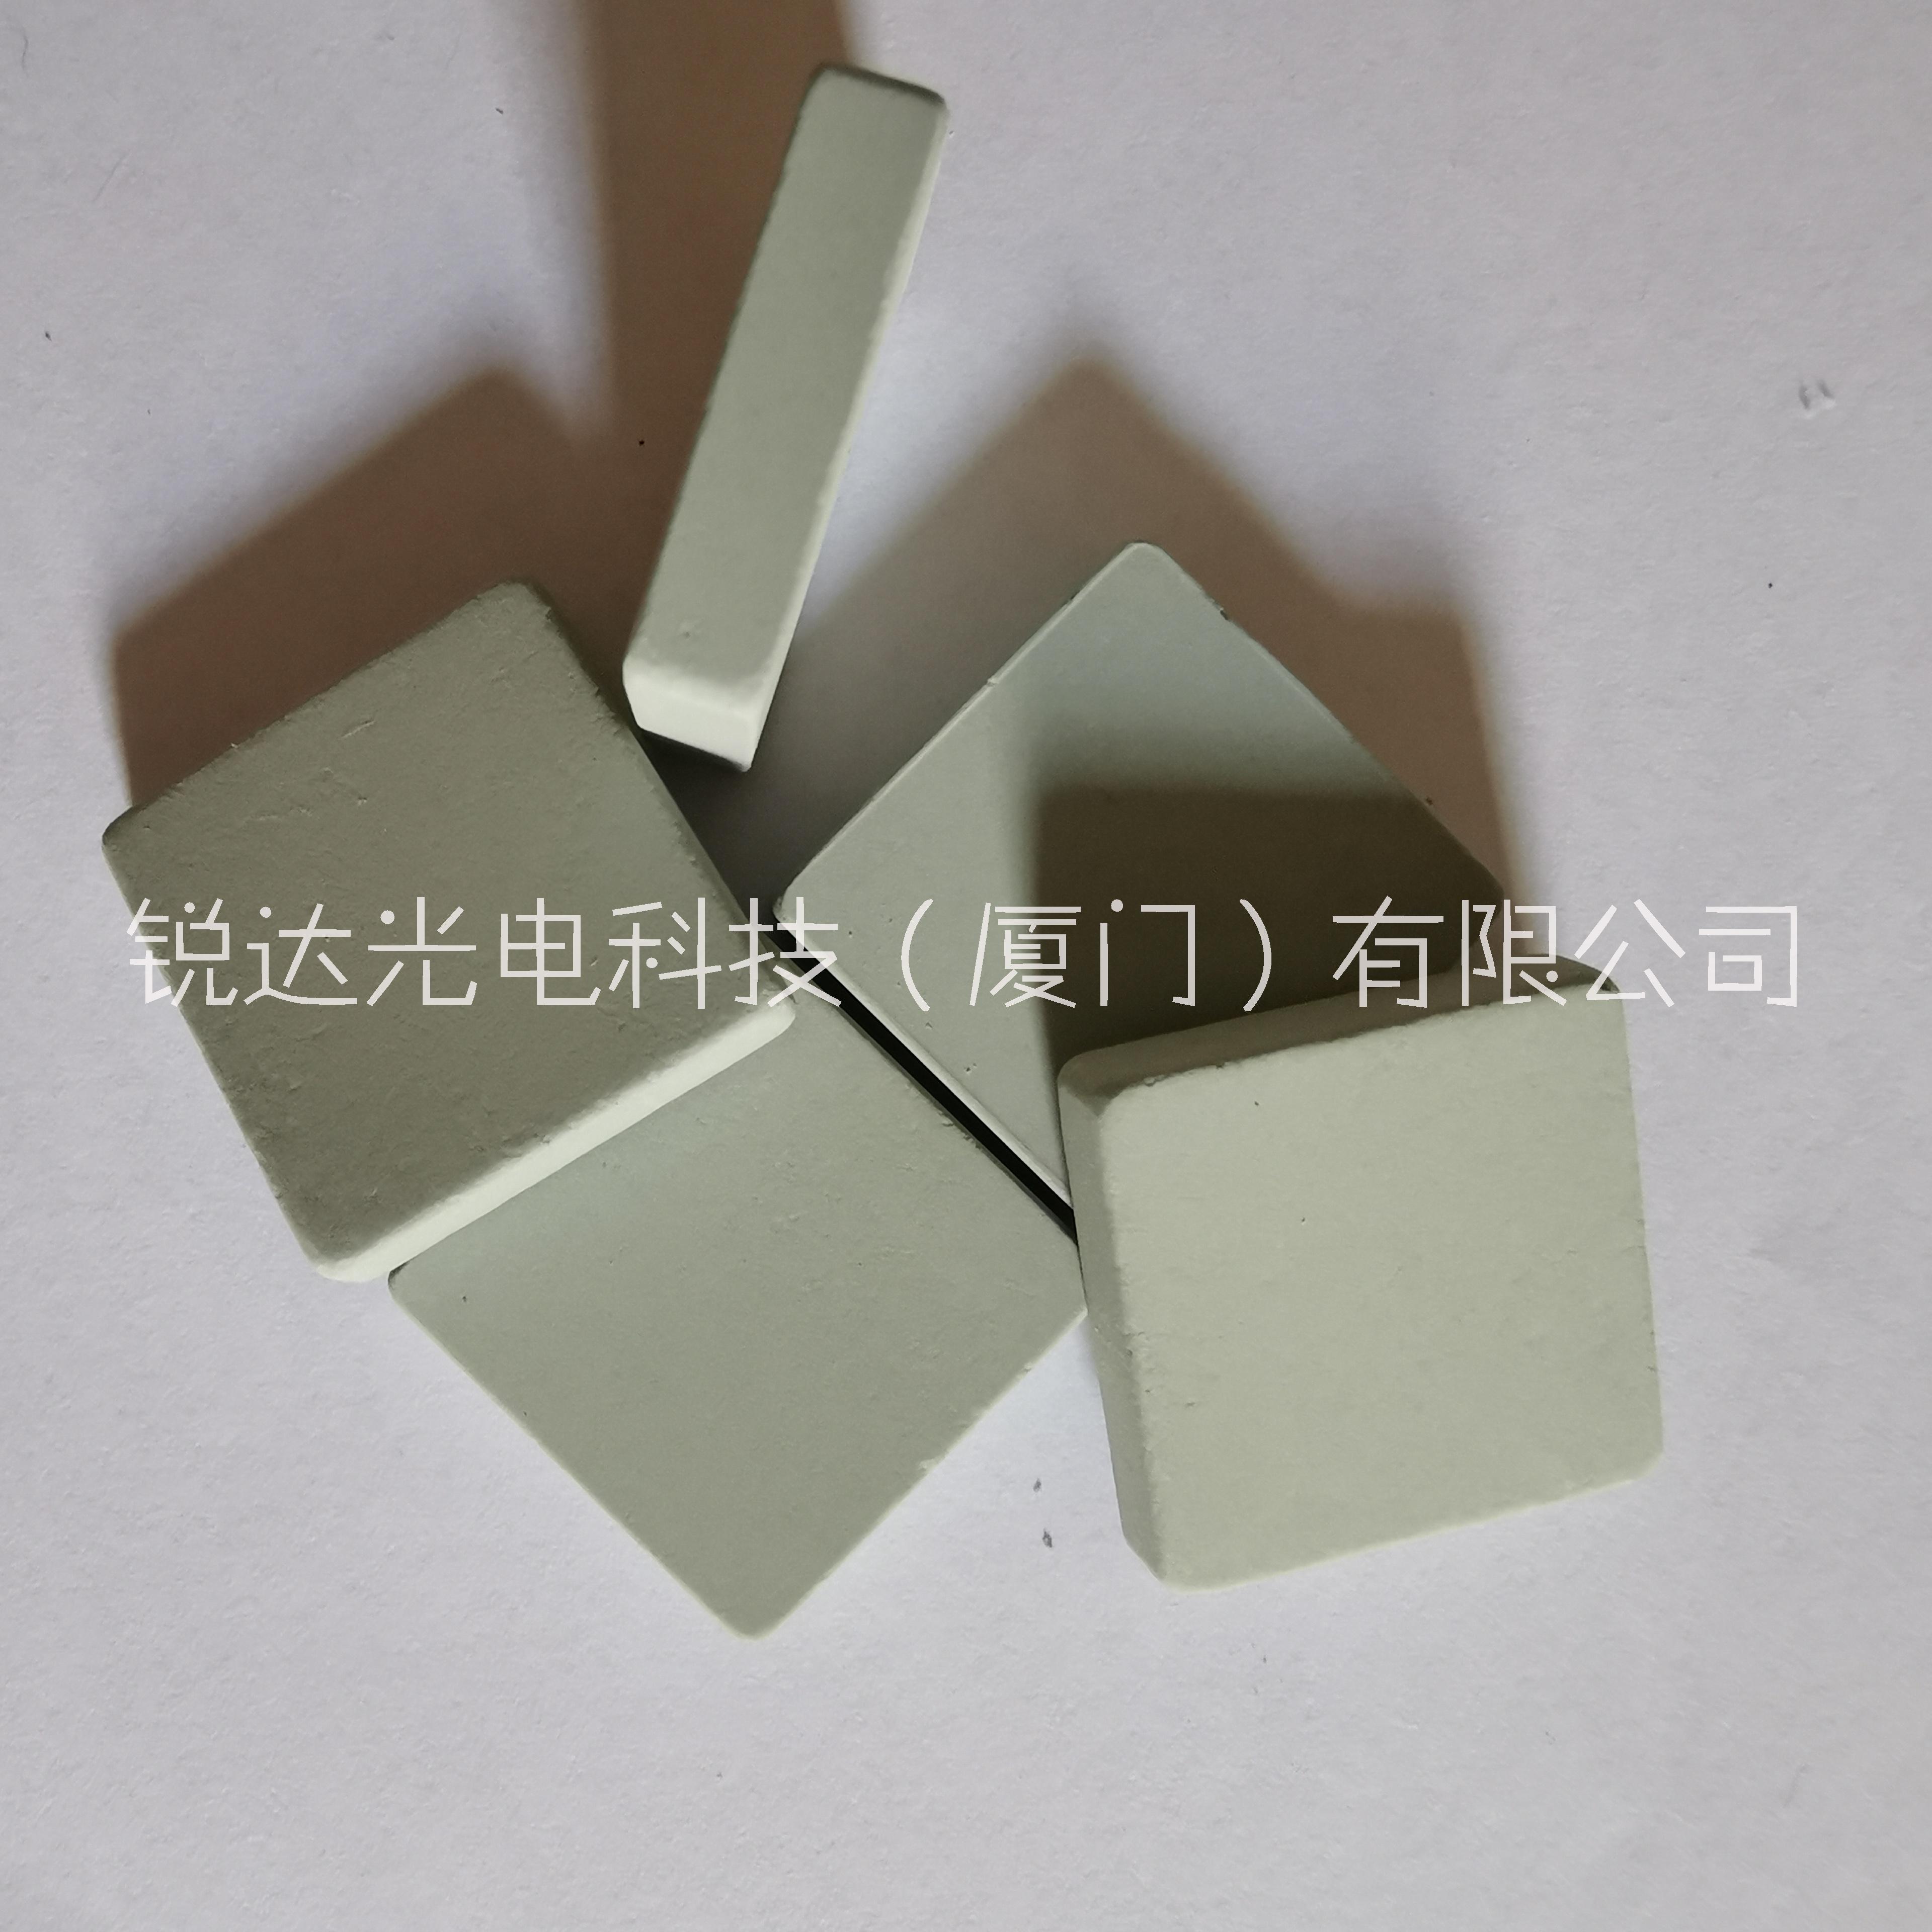 东莞工控机开发板 主板芯片陶瓷散热片